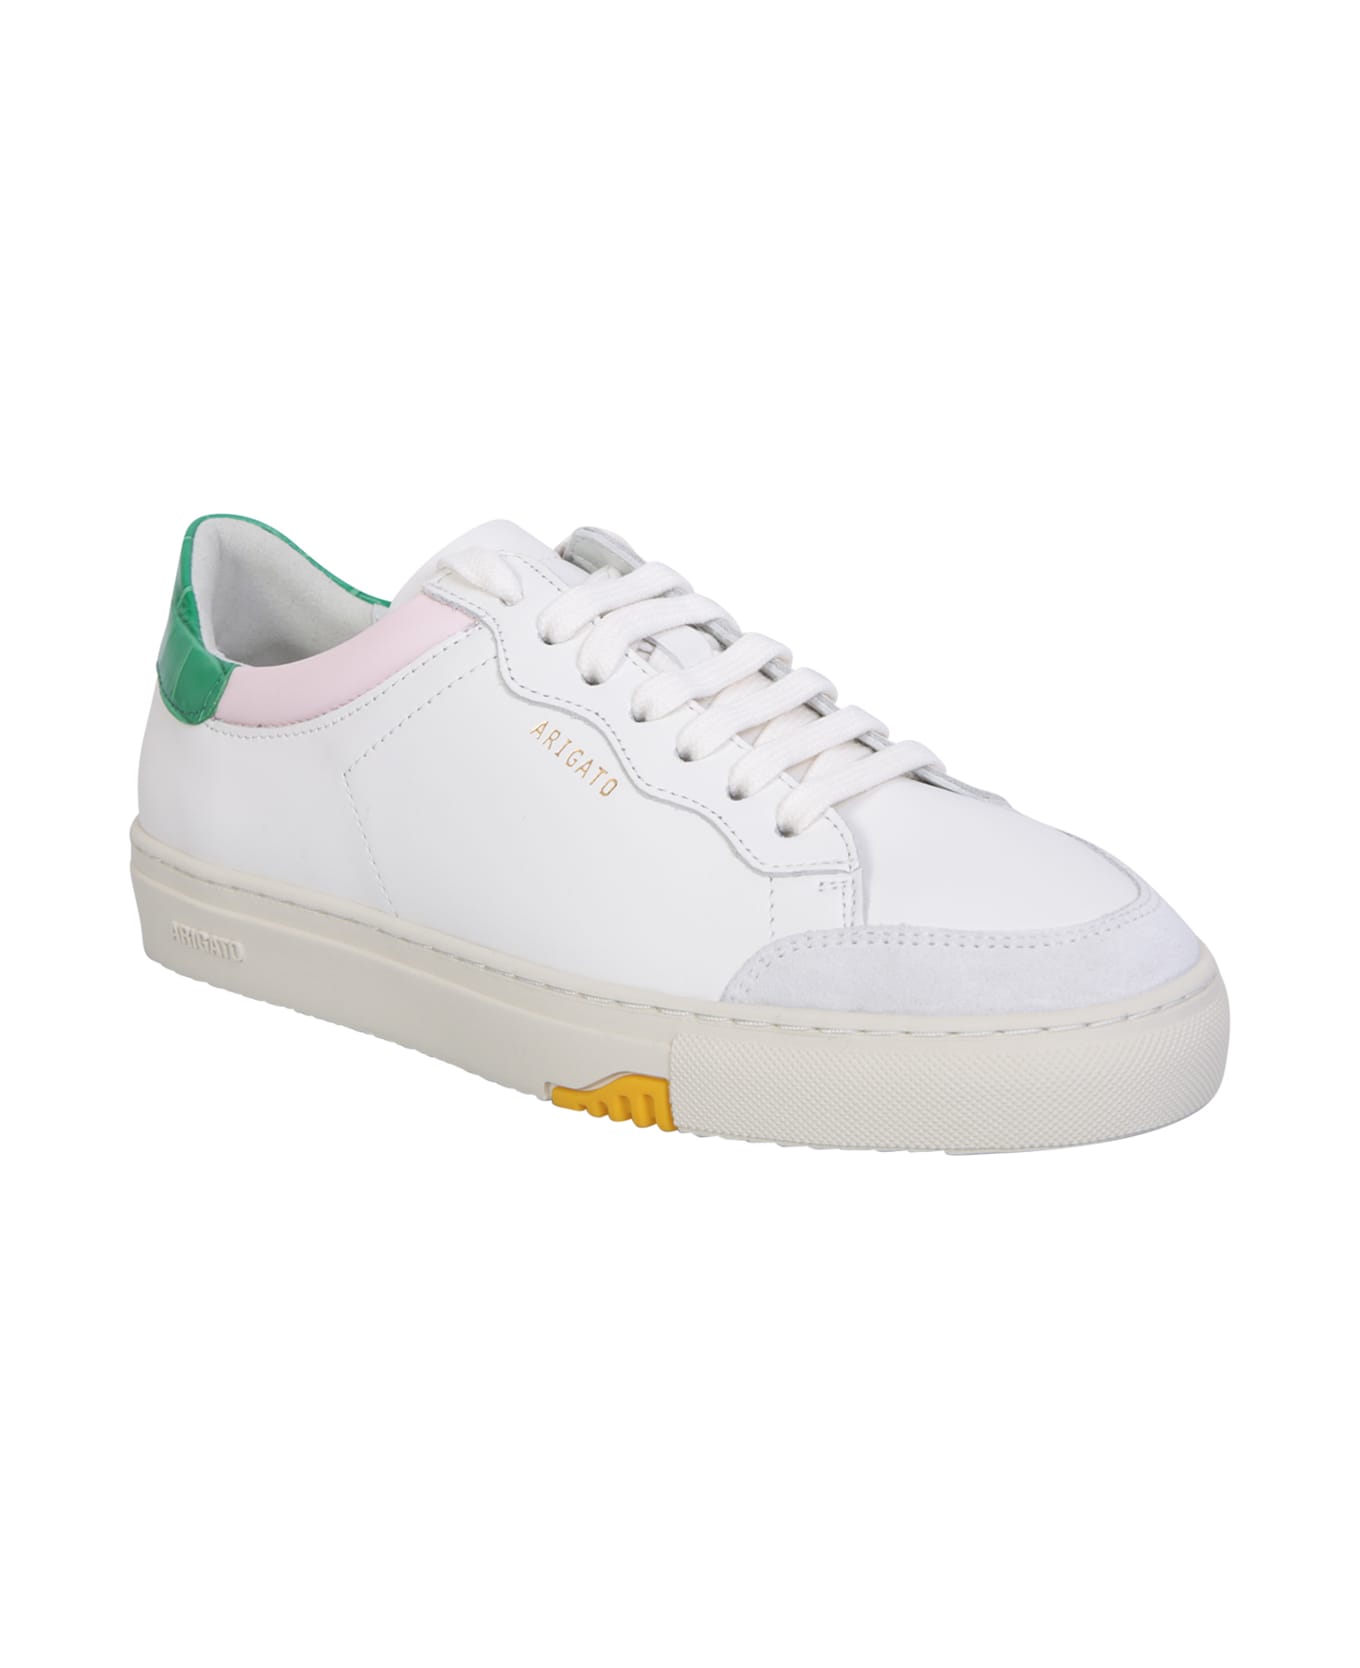 Axel Arigato Clean 180 White/ Green Sneakers - White